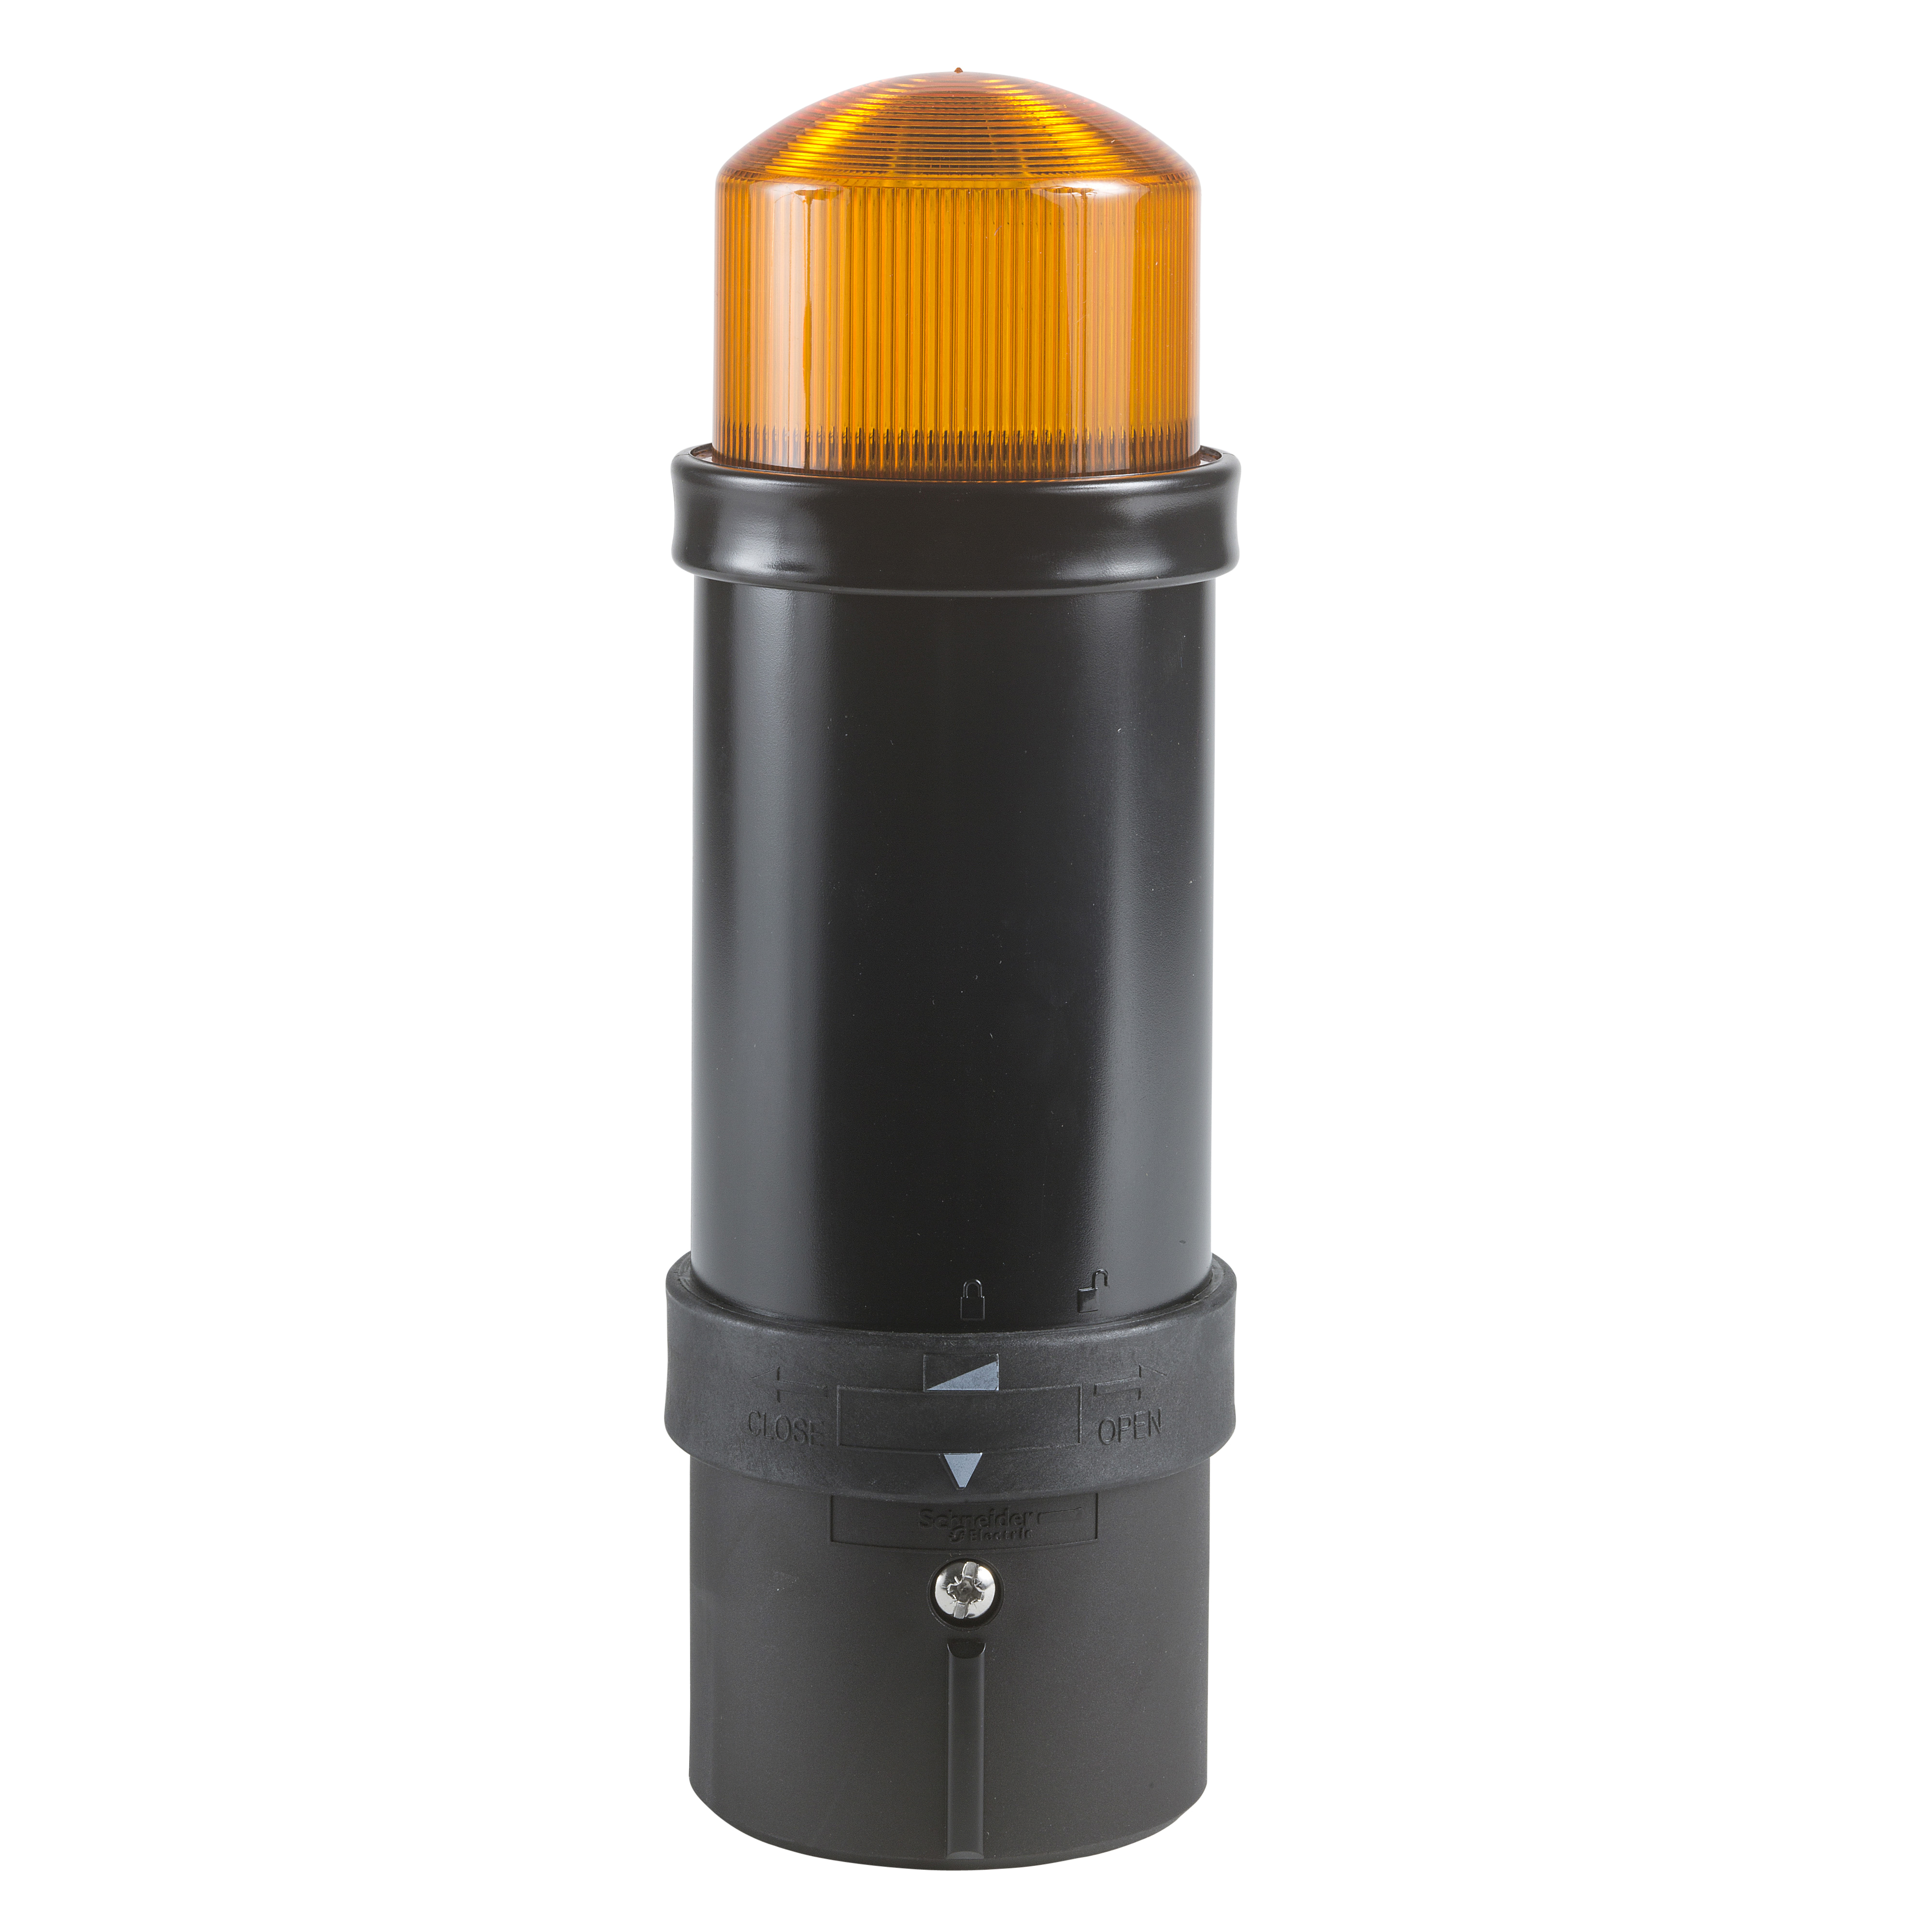 Illuminated beacon, Harmony XVB, plastic, orange, 70mm, flashing, integral flash discharge tube, 5 joule, 230V AC